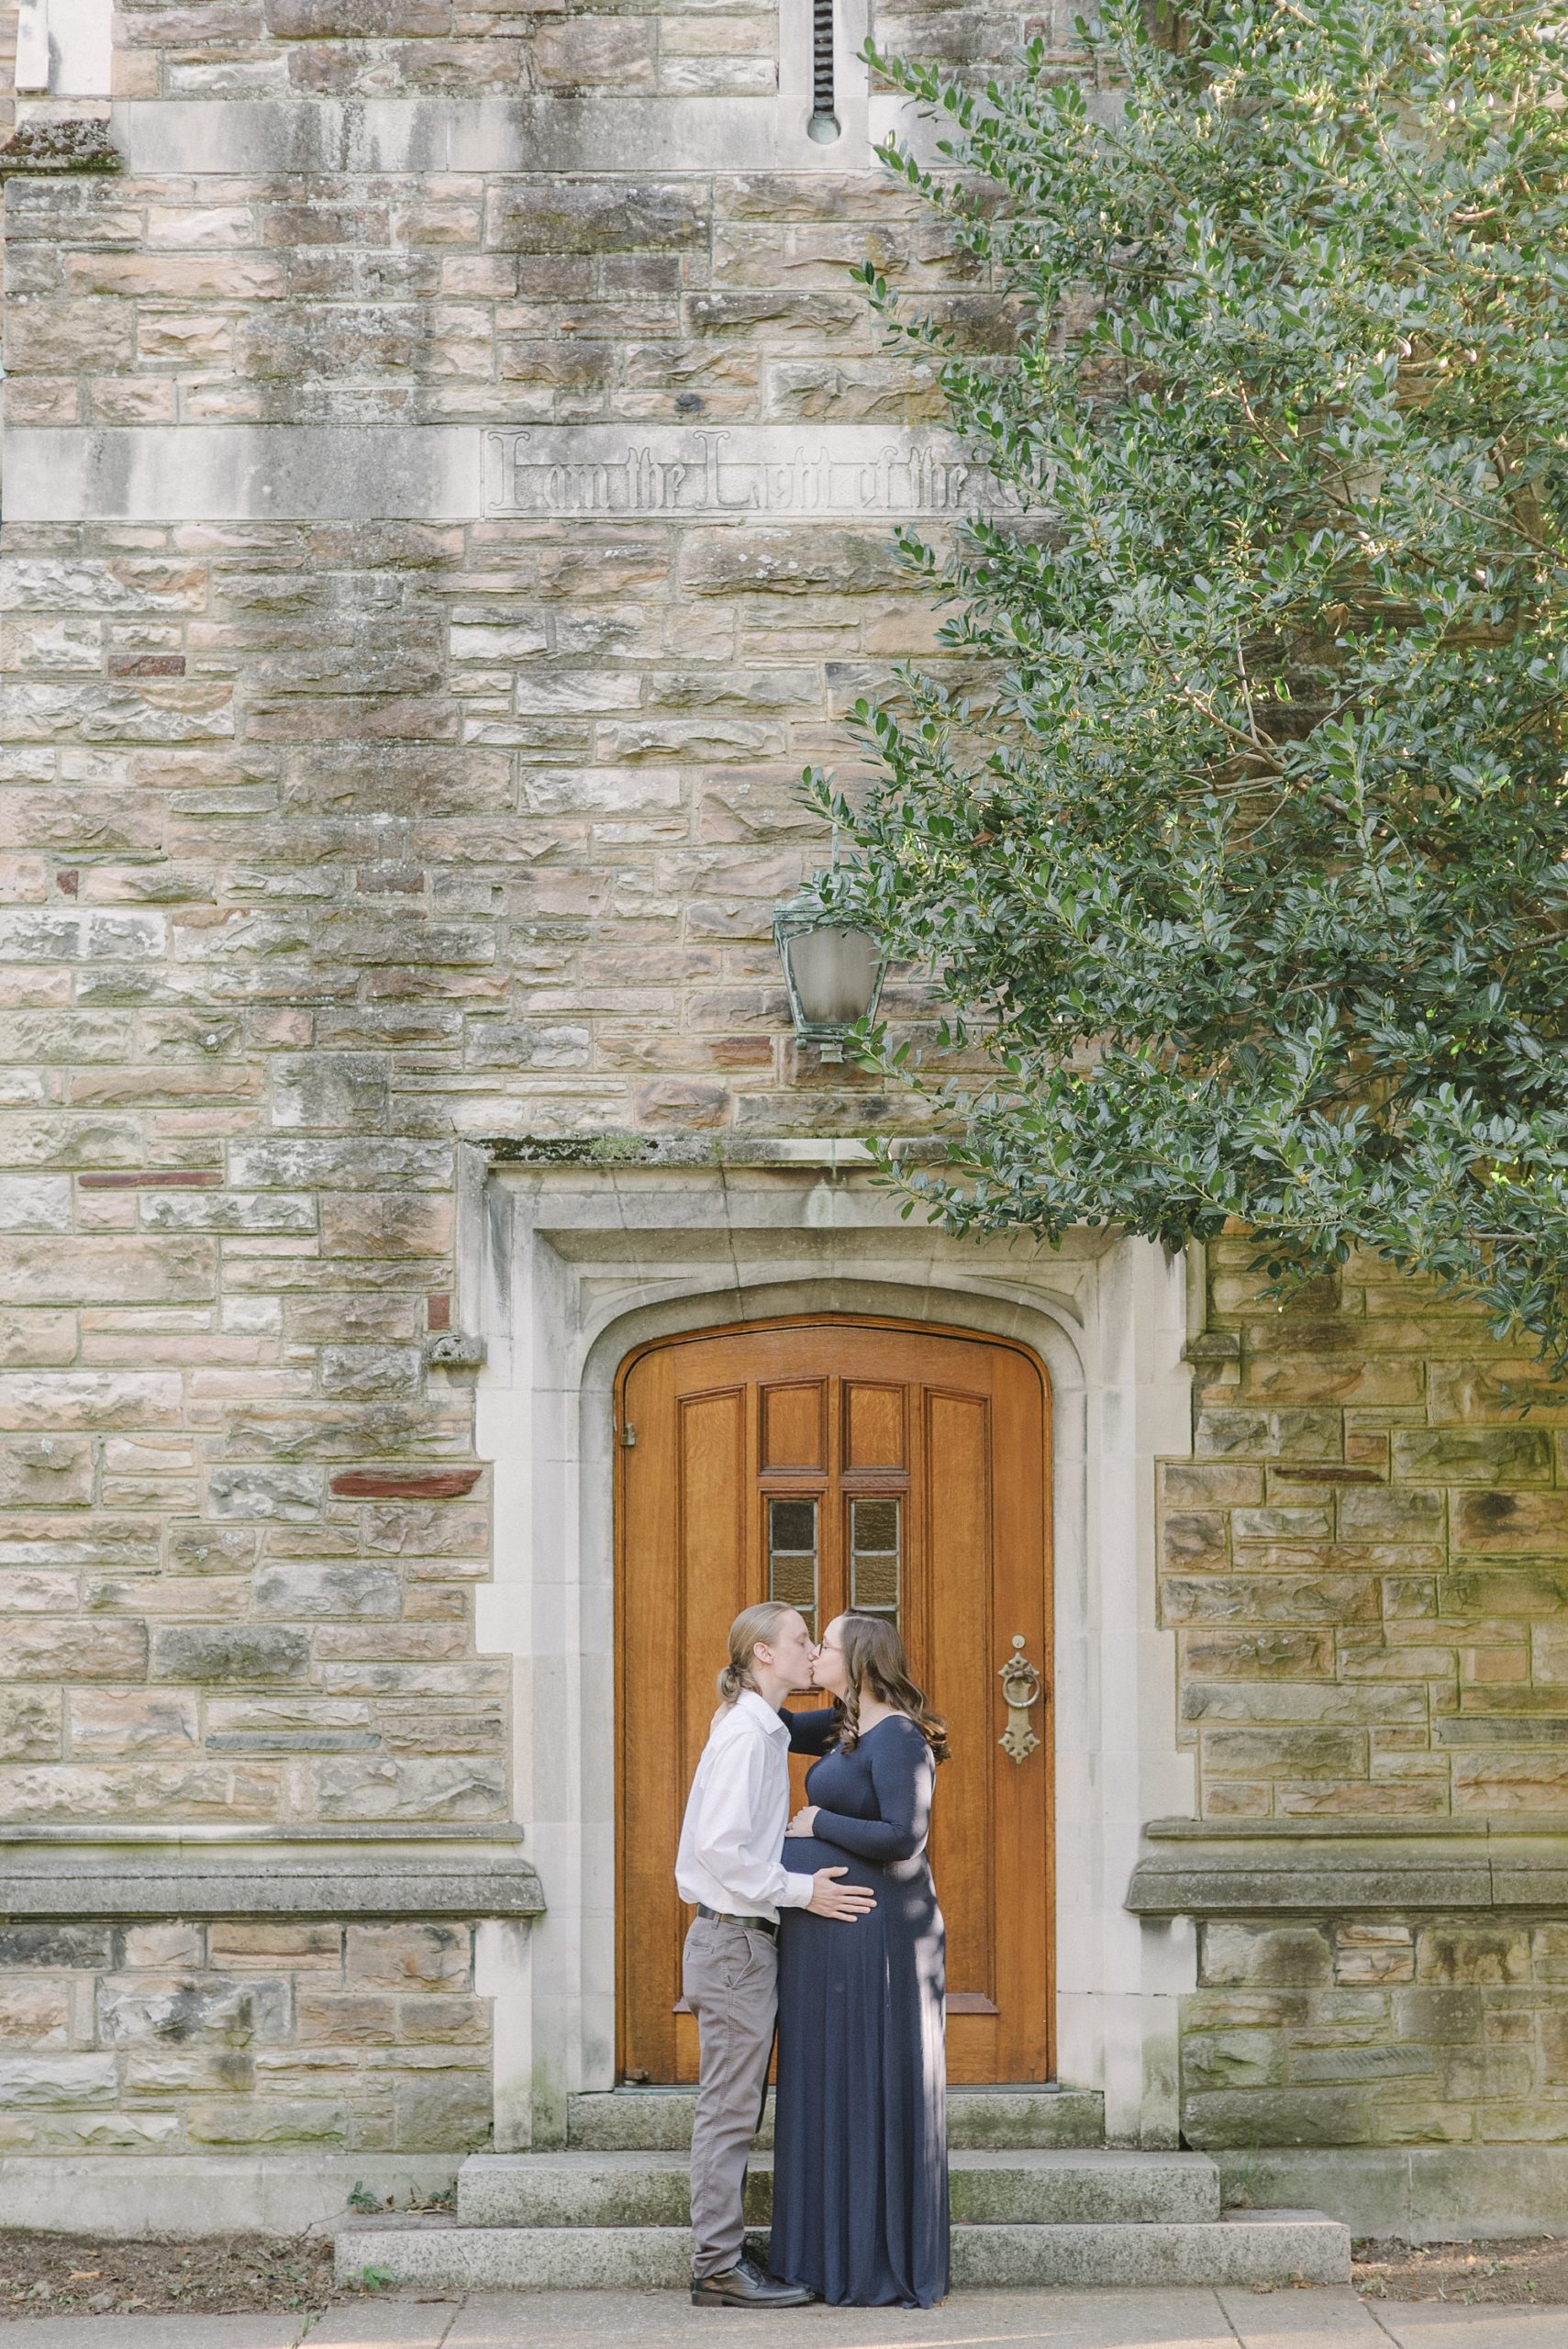 married couple kisses by wooden door at Vanderbilt University